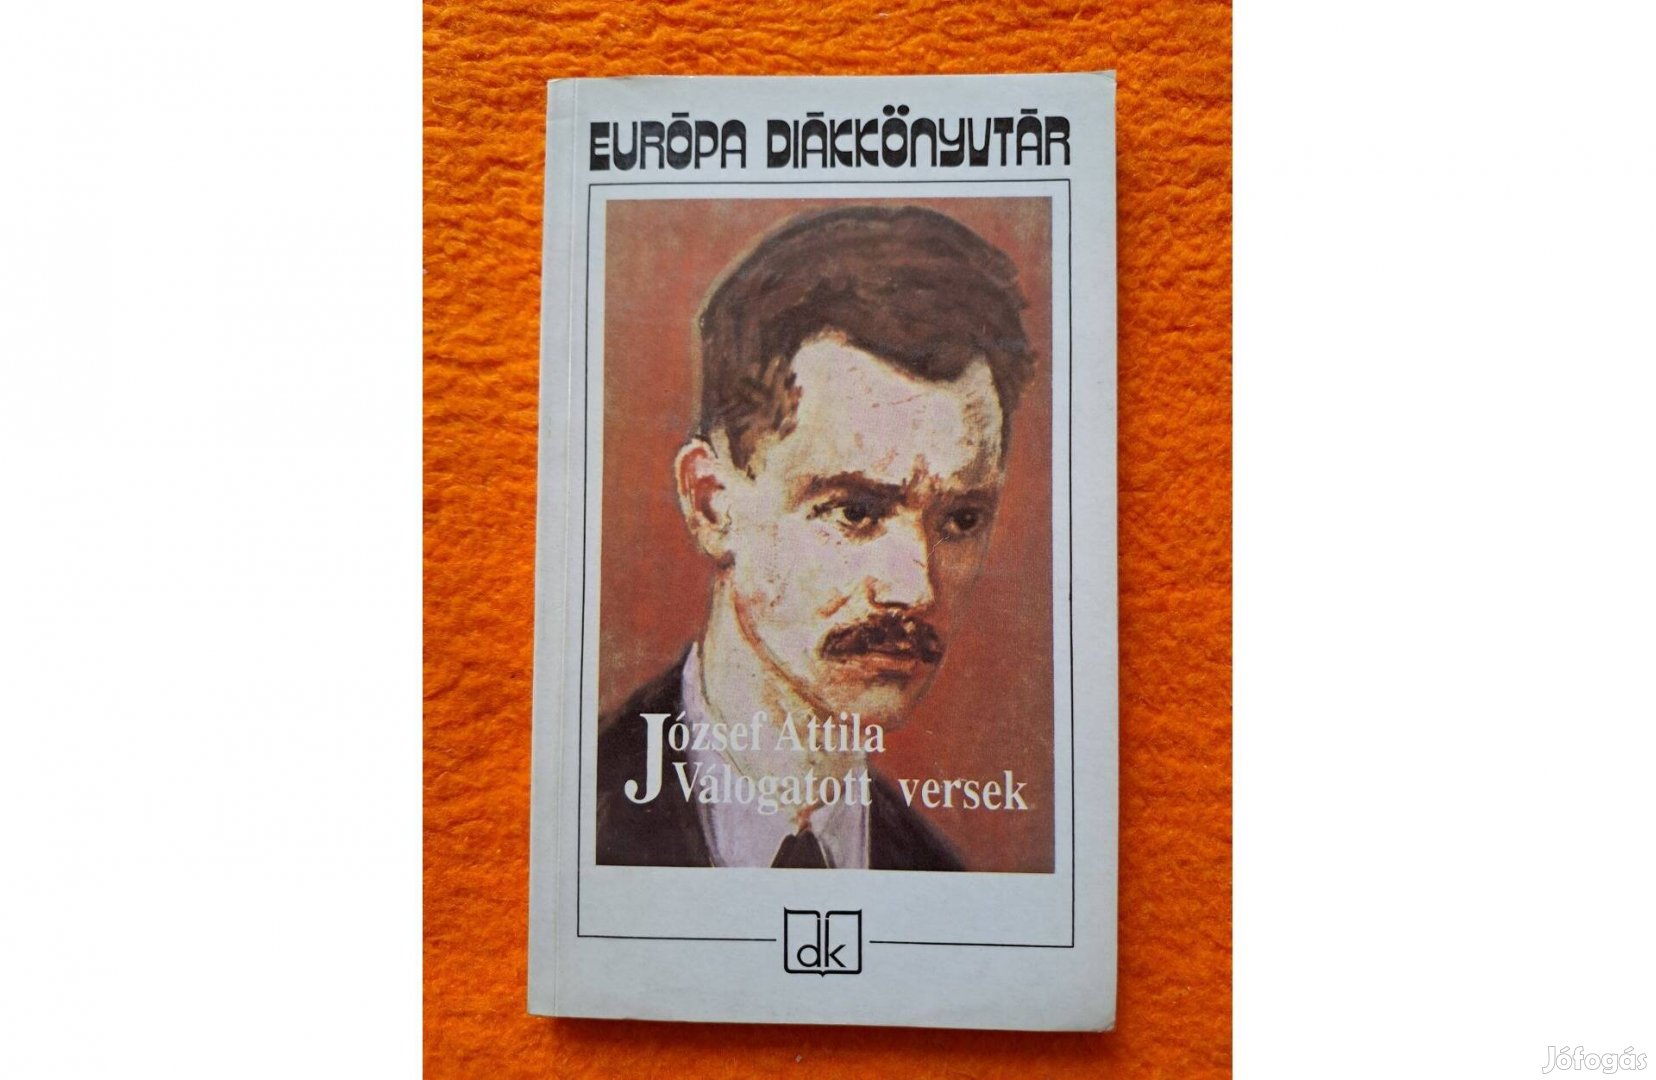 József Attila: Válogatott versek Európa Diákkönyvtár sorozat, 1992